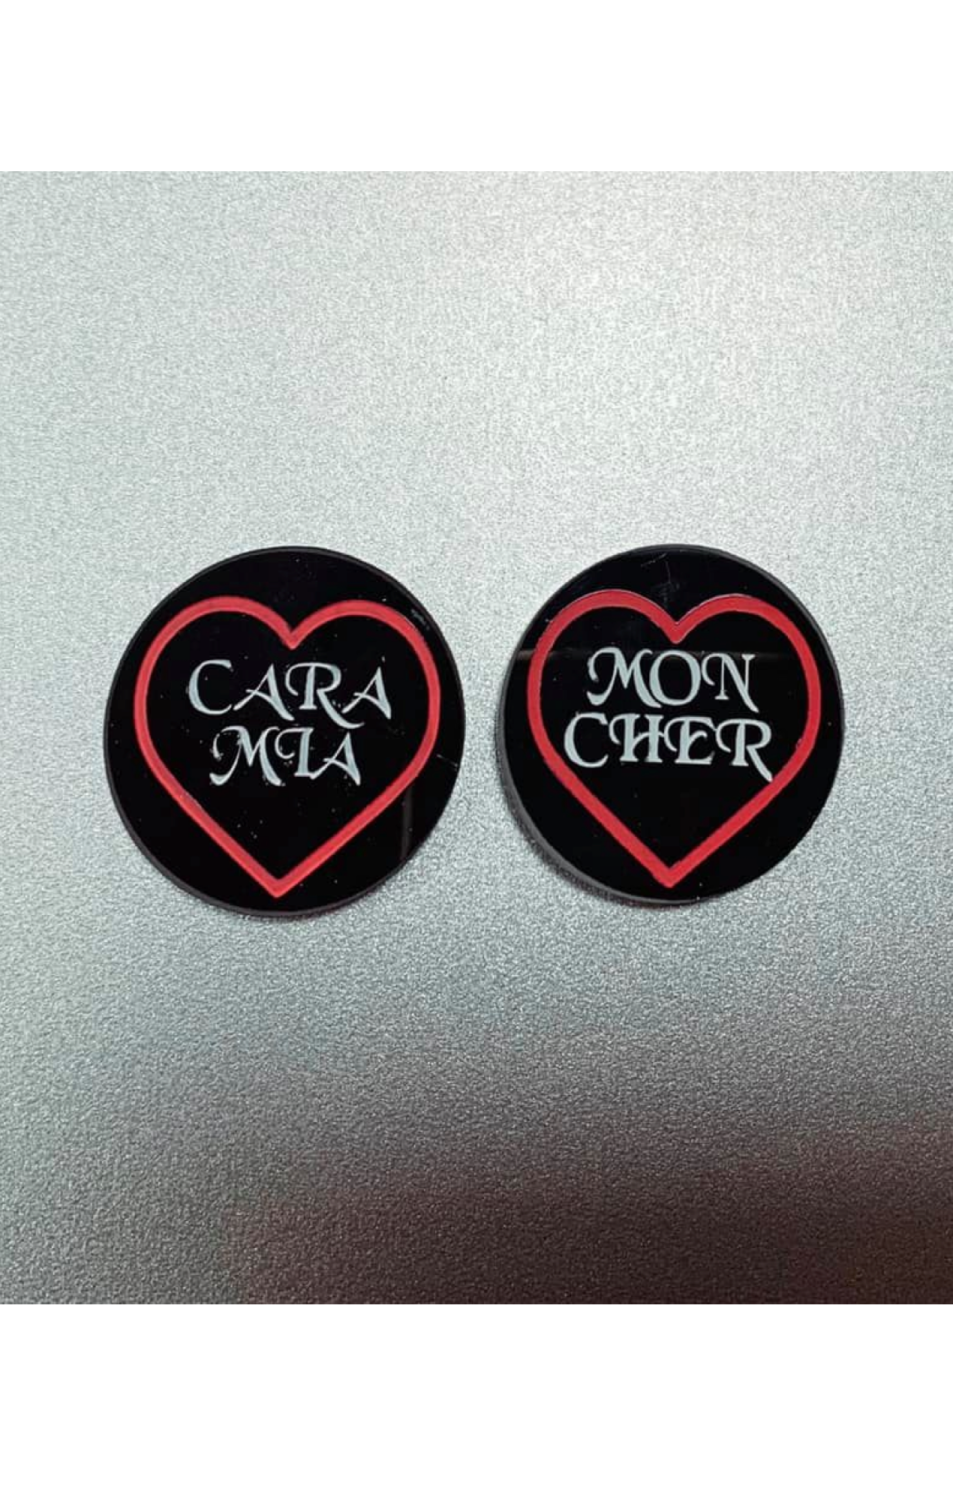 Cara Mia & Mon Cher Magnet Set